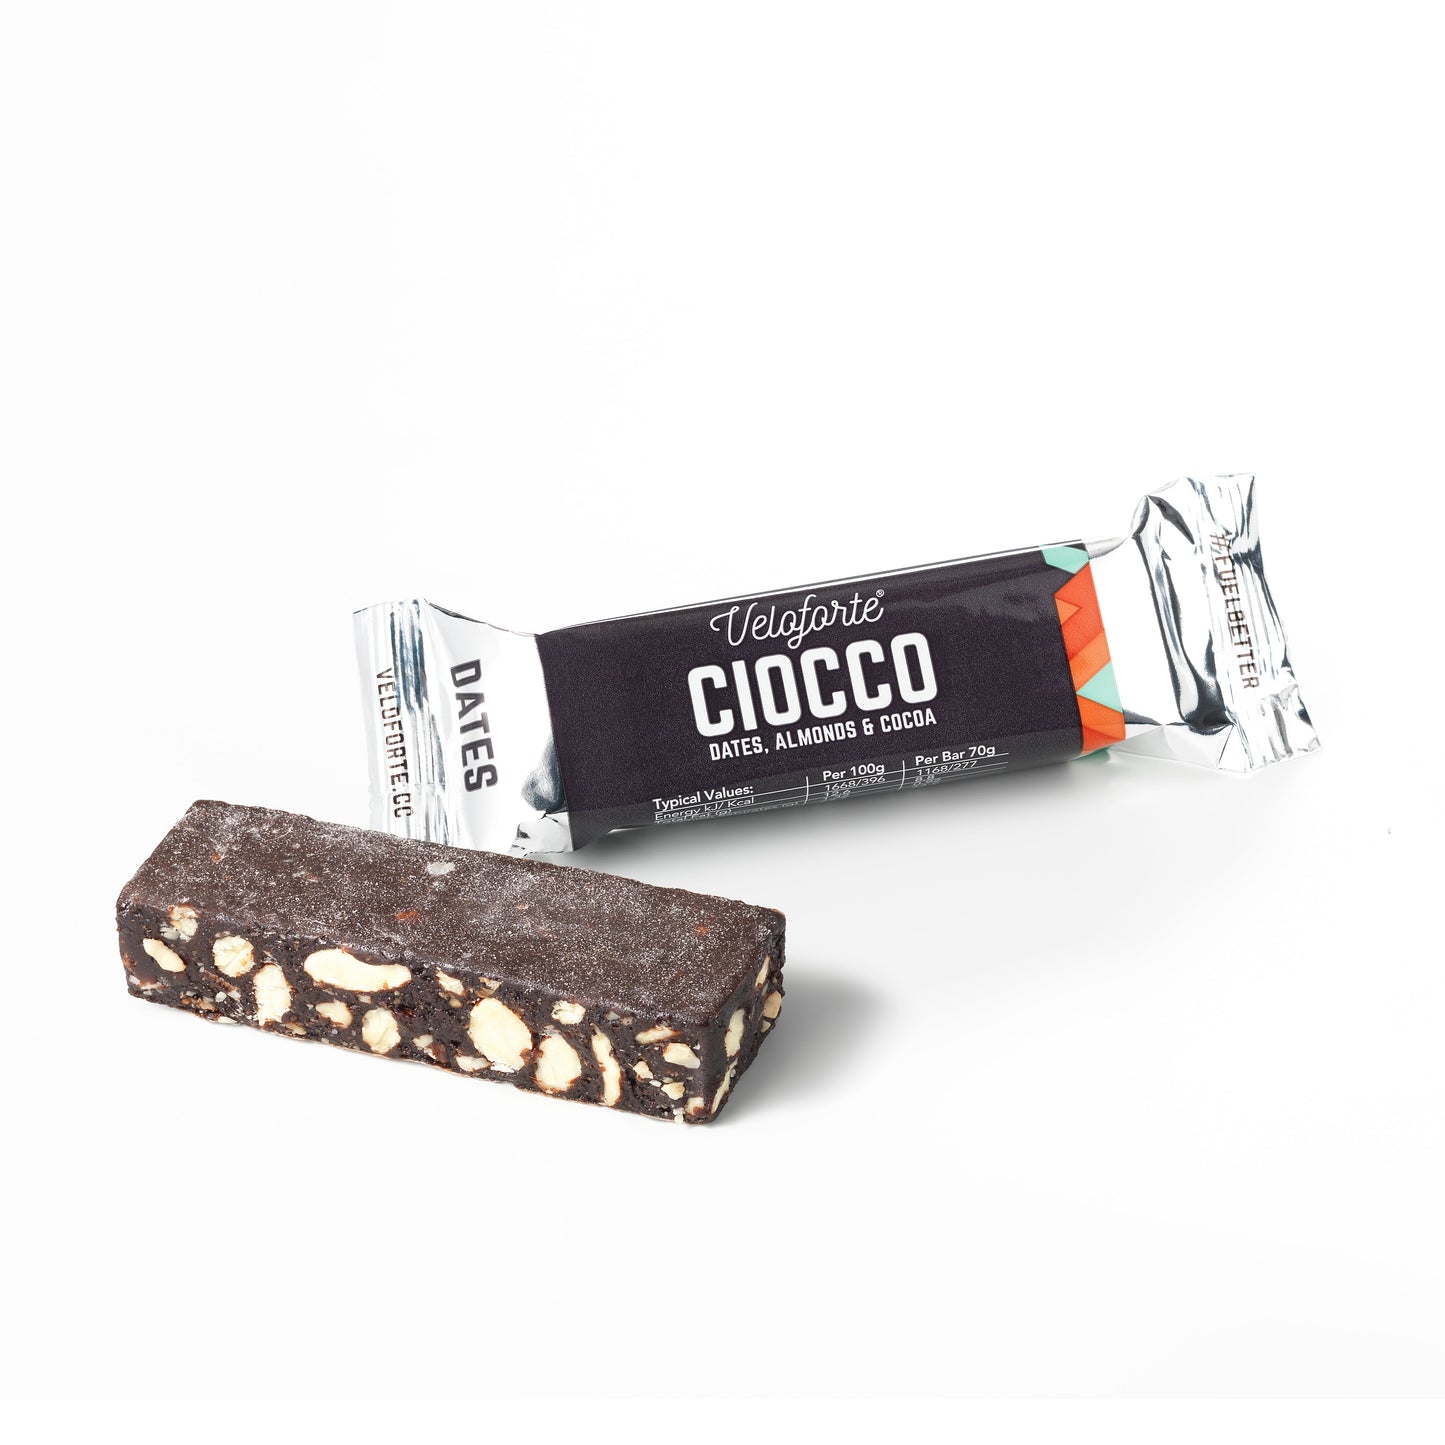 Veloforte - Ciocco Bar - Dates, Almonds & Cocoa - Box of 24